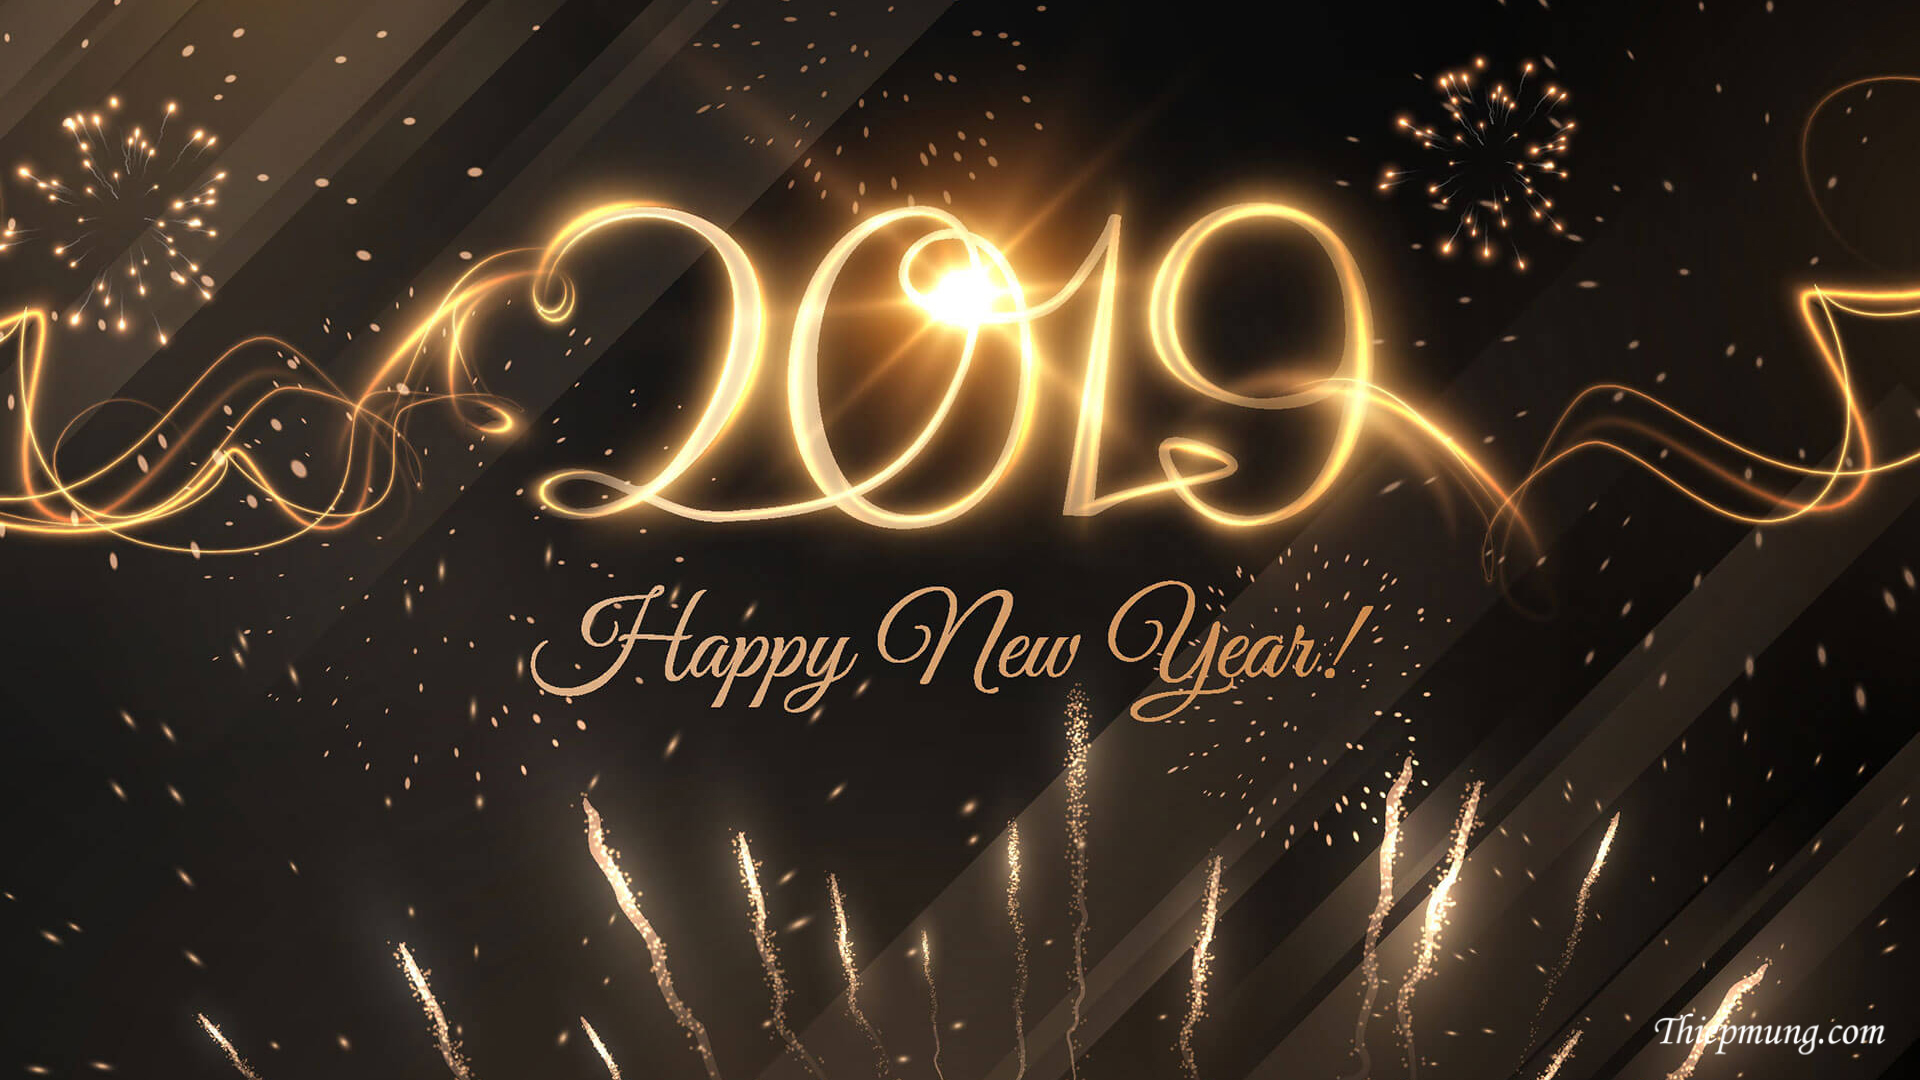 Thiệp mừng năm mới 2019 đẹp nhất - Hình 5